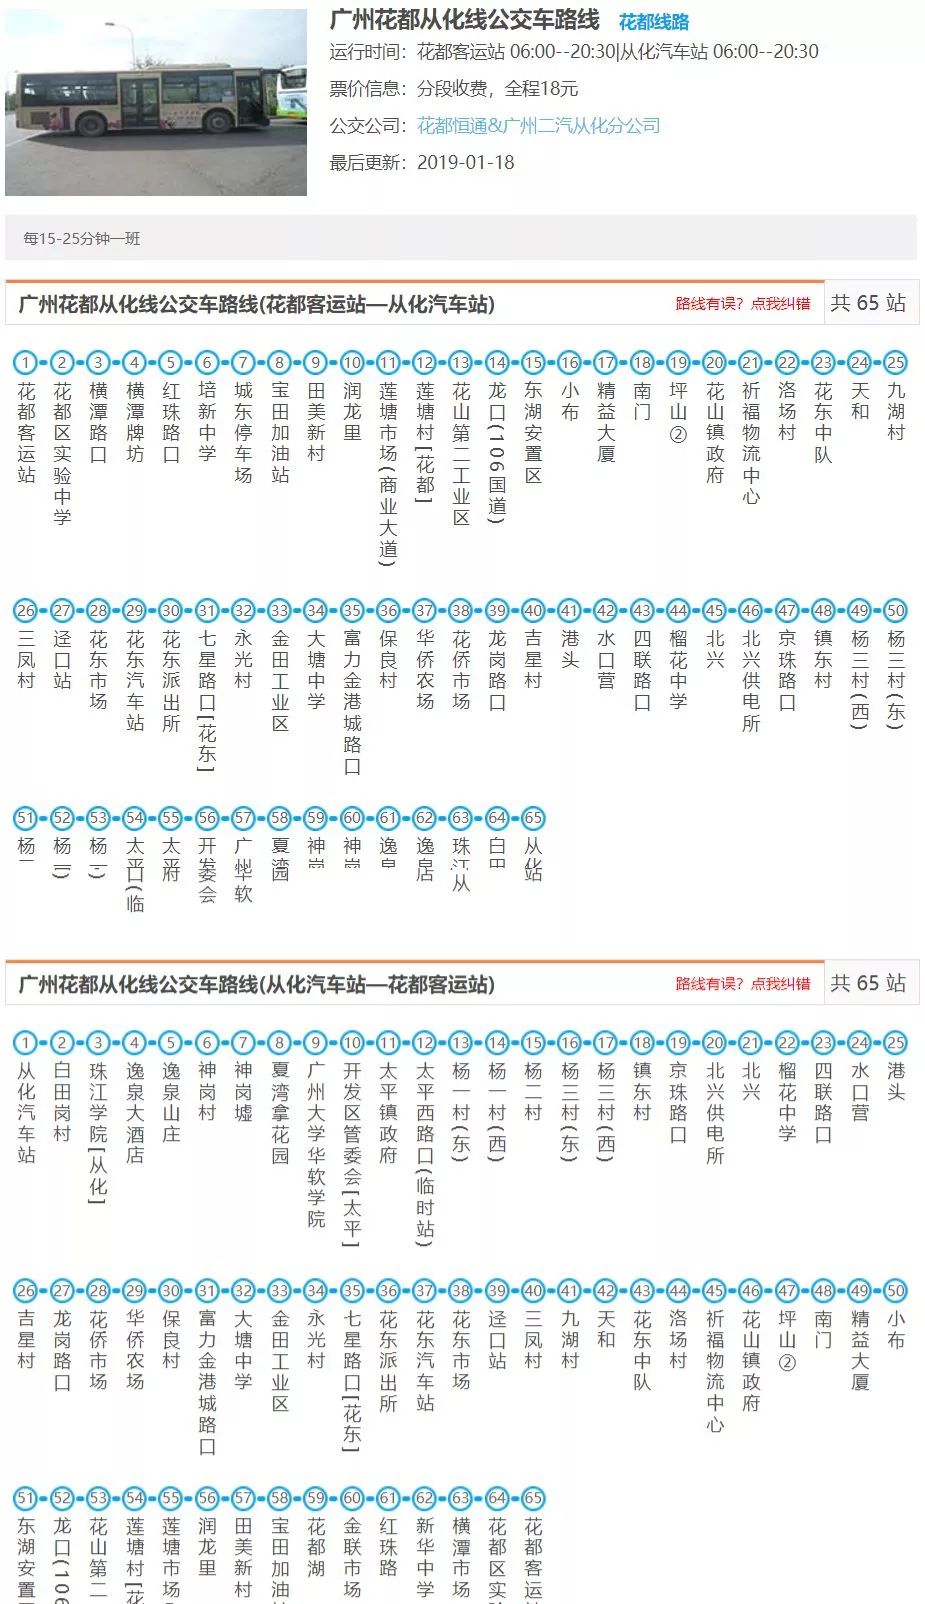 广州9号公交车线路图图片